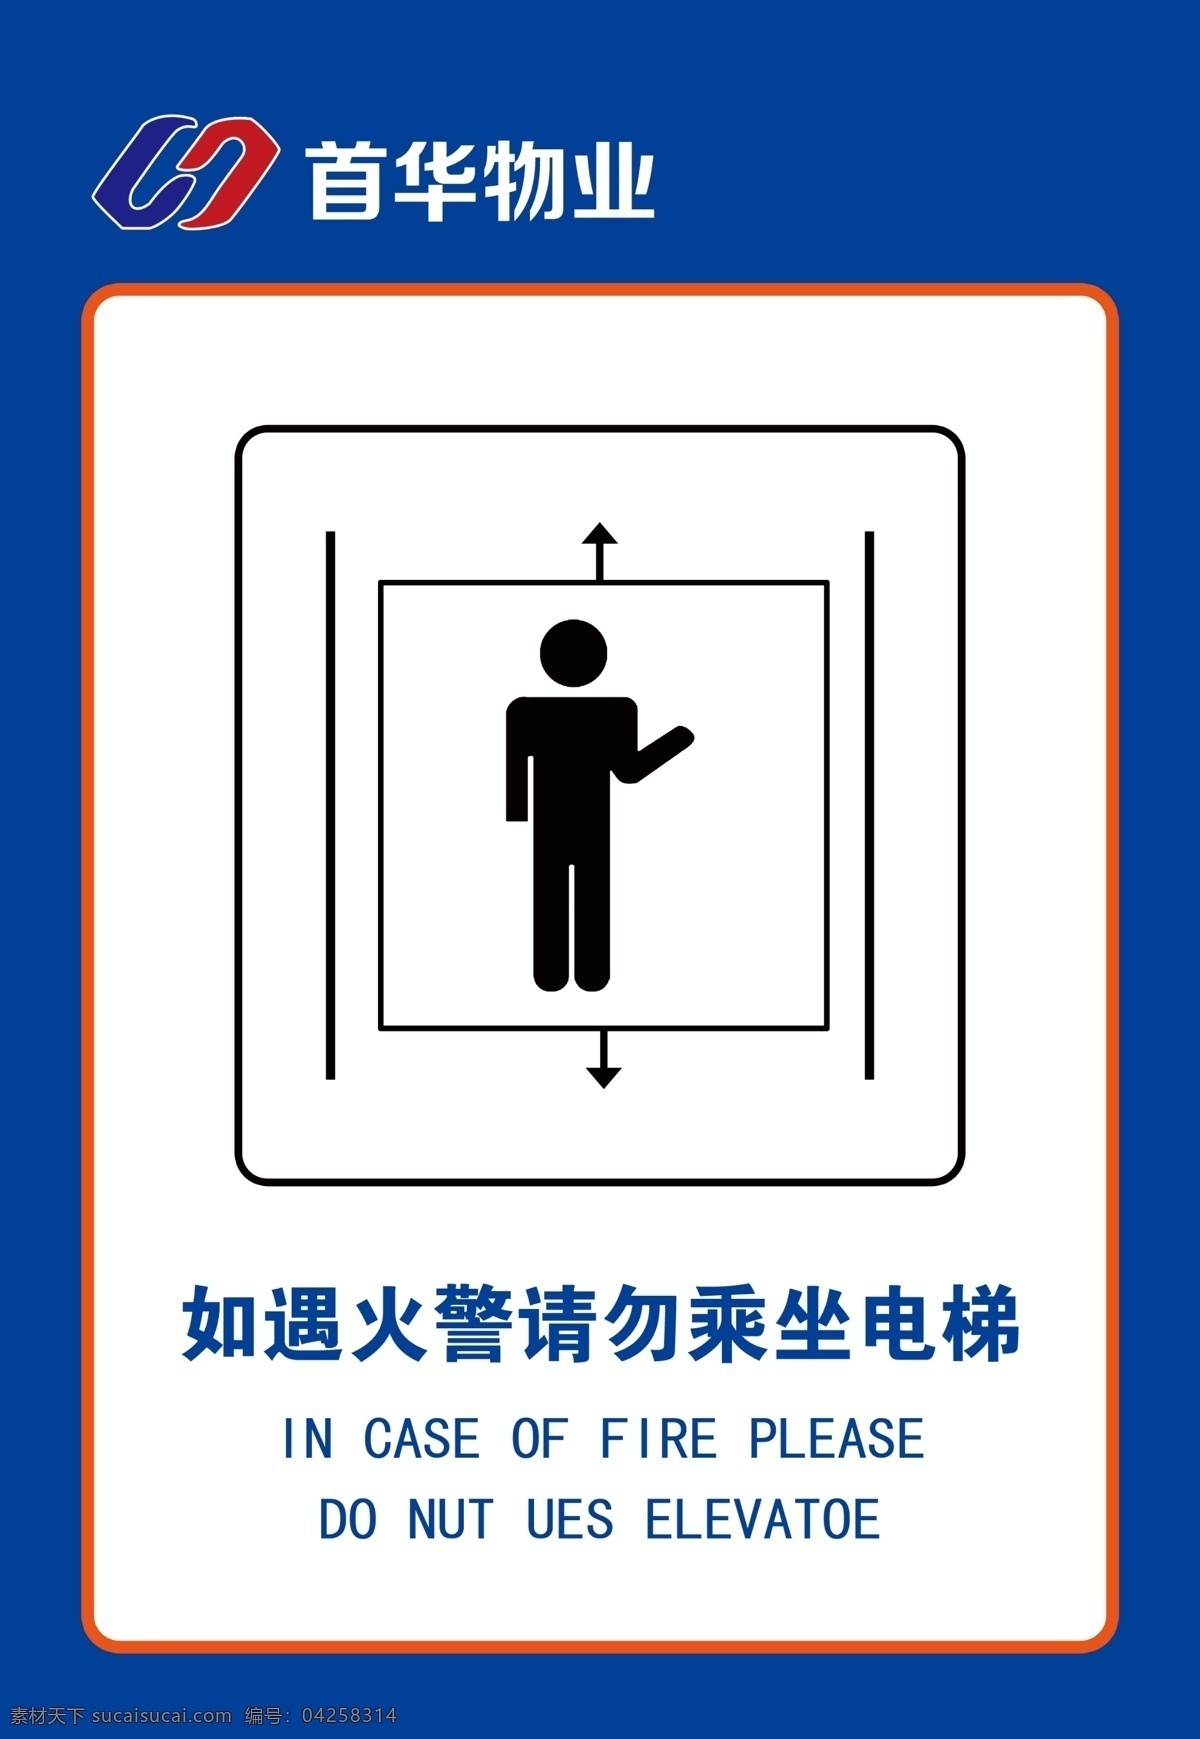 遇 火警 请勿 乘坐 电梯 请勿乘坐 火灾注意事项 如遇火警